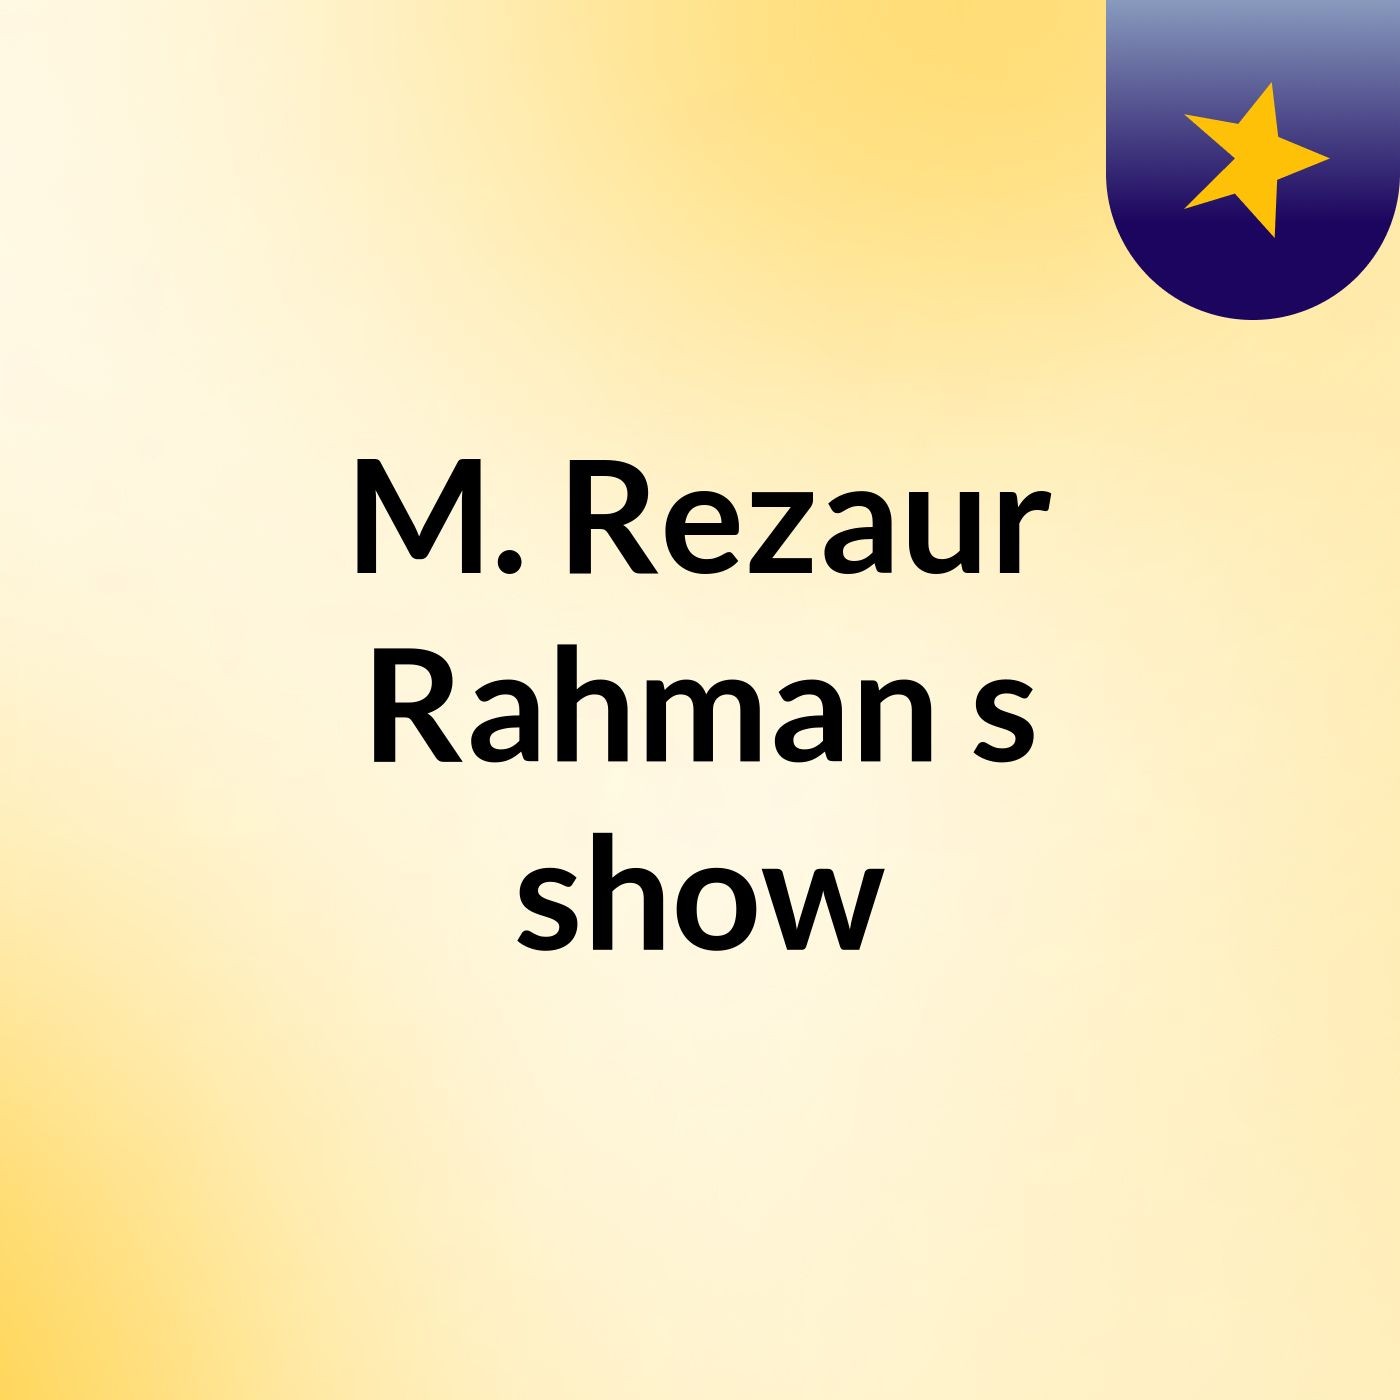 Episode 4 - M. Rezaur Rahman's show